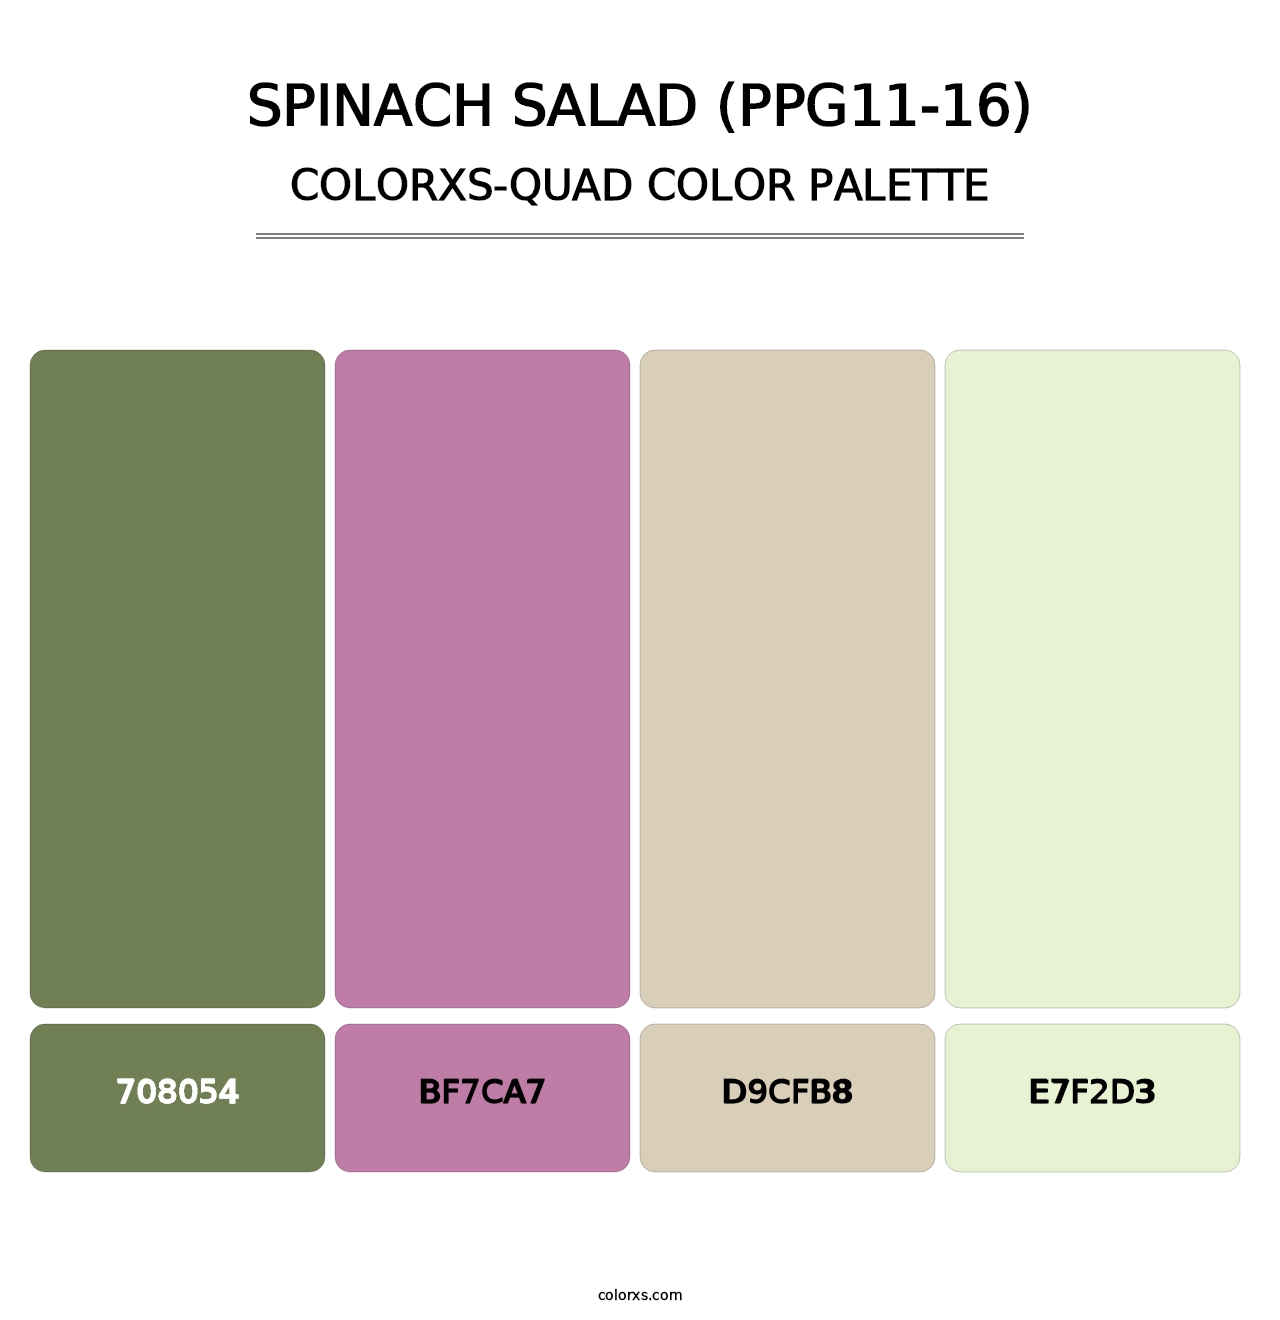 Spinach Salad (PPG11-16) - Colorxs Quad Palette